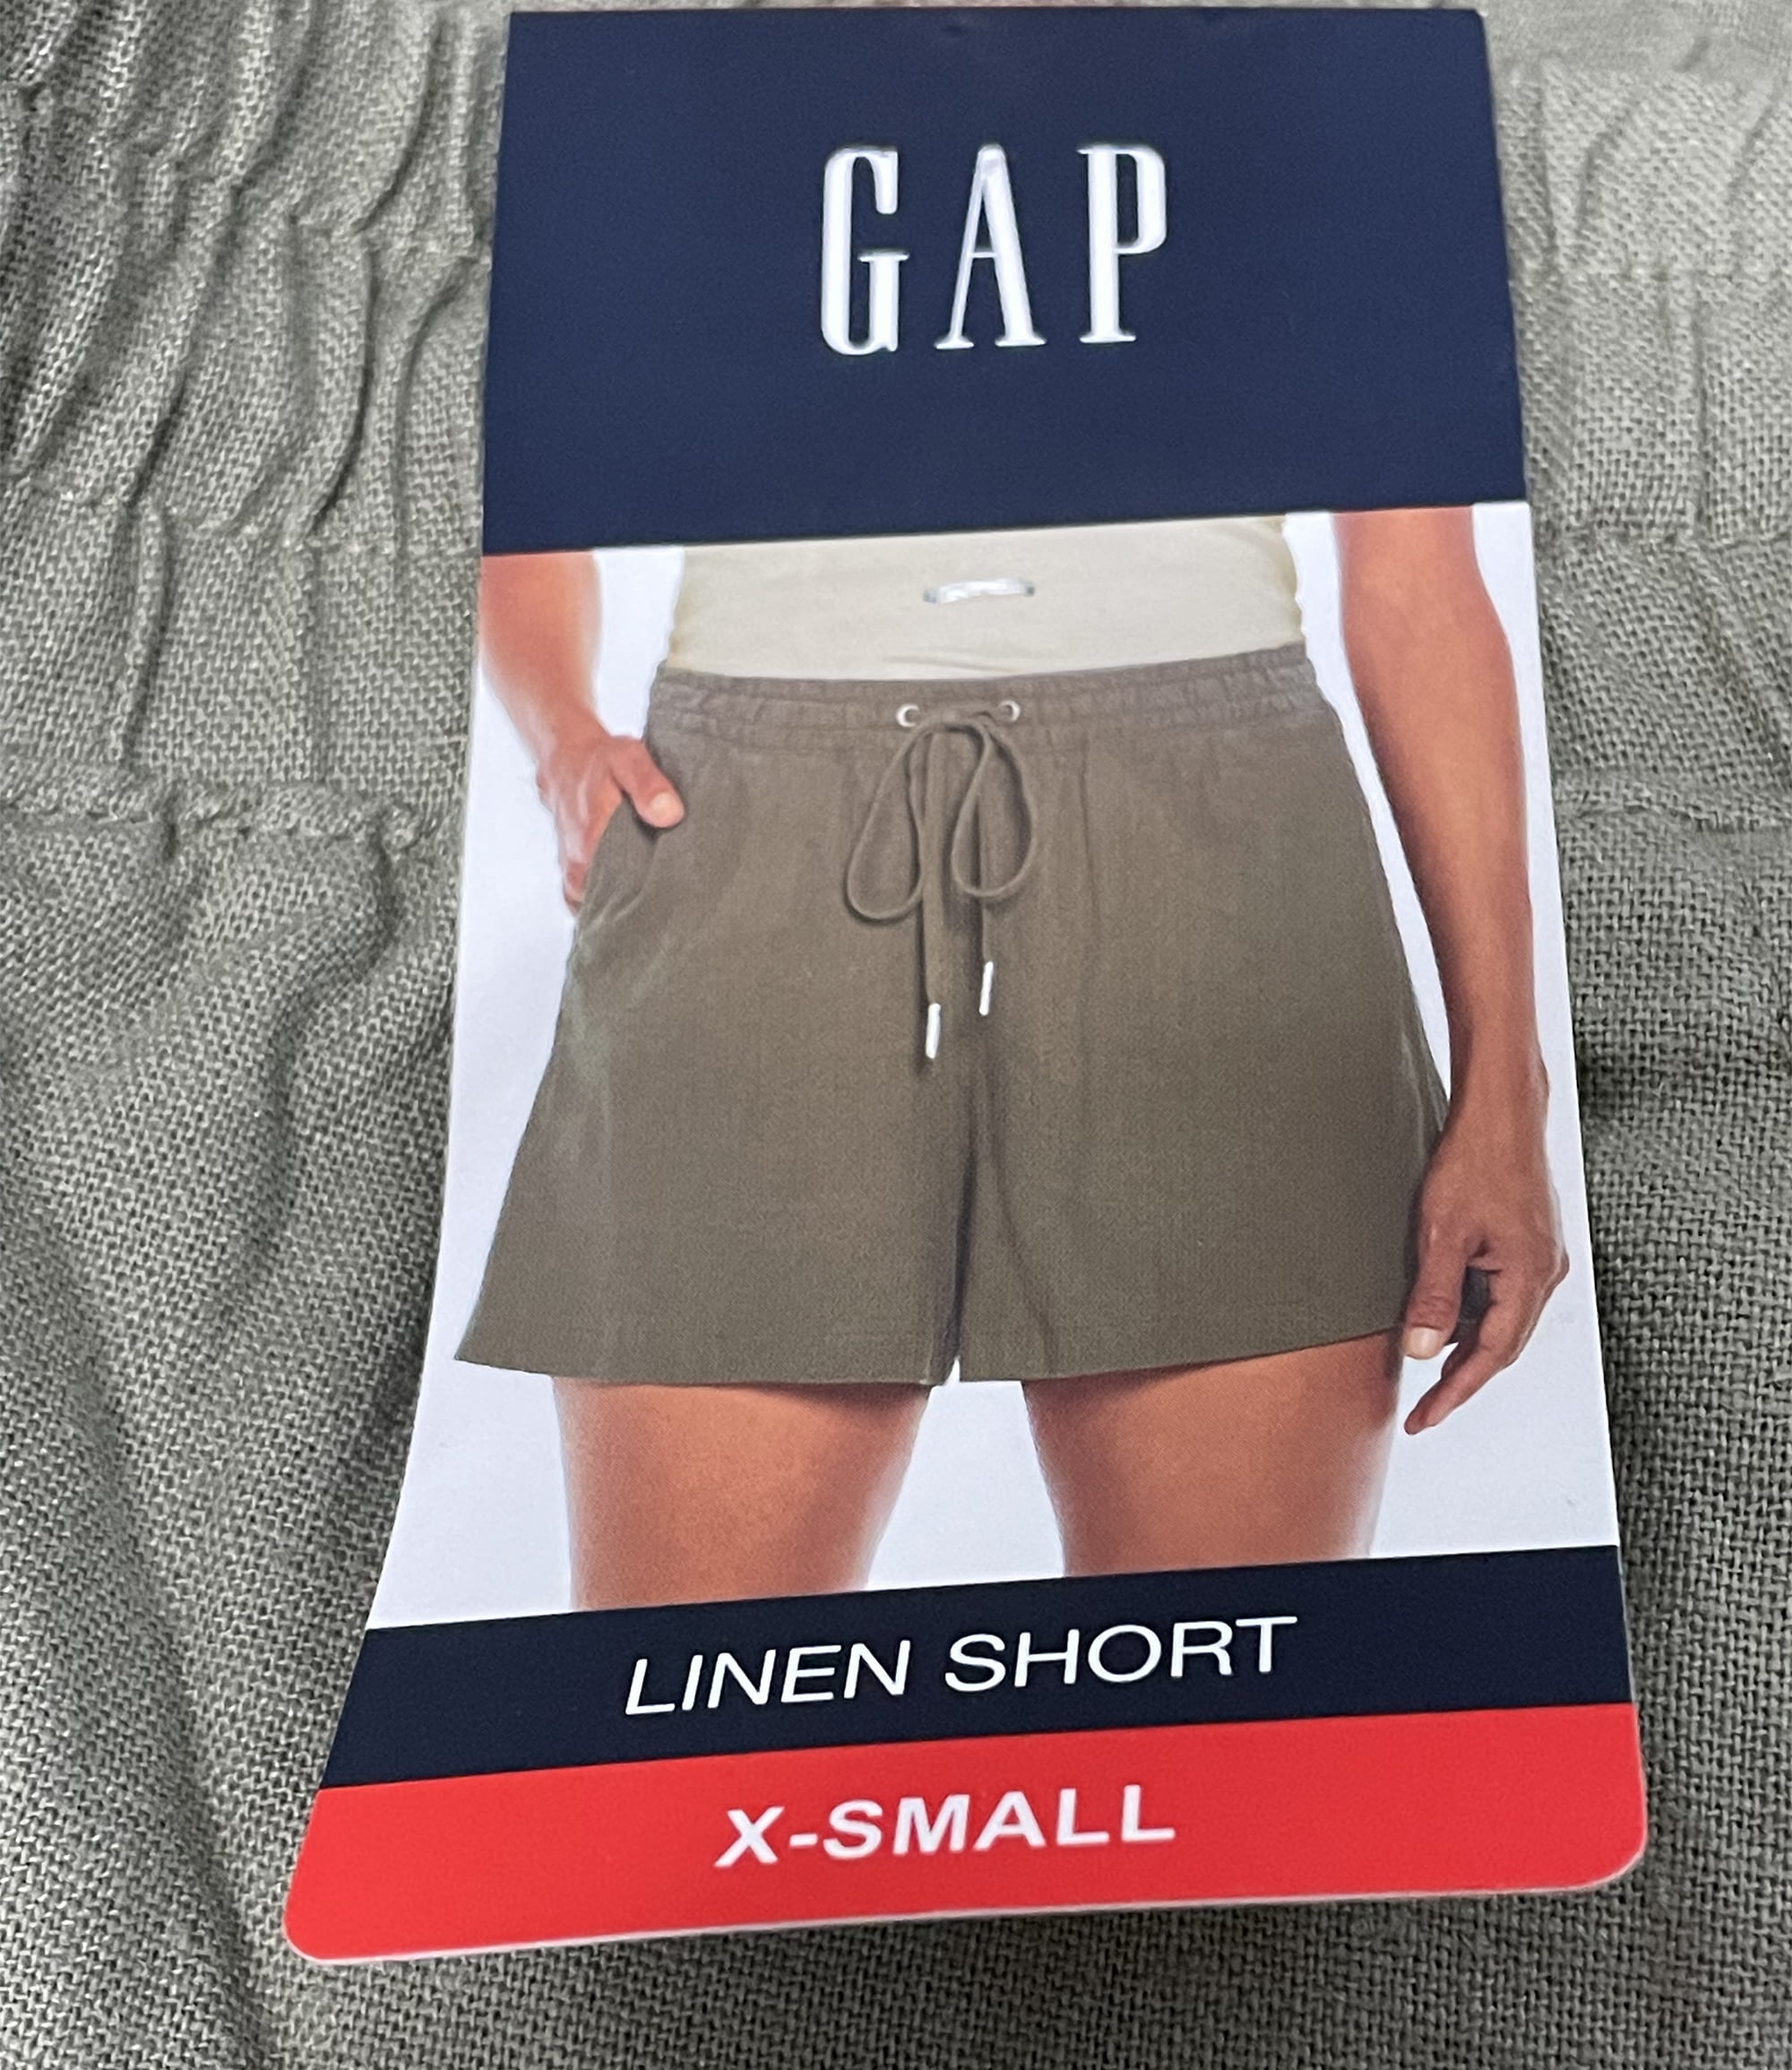 GAP Women's Lightweight & Comfortable Linen Shorts (Vetiver, XS